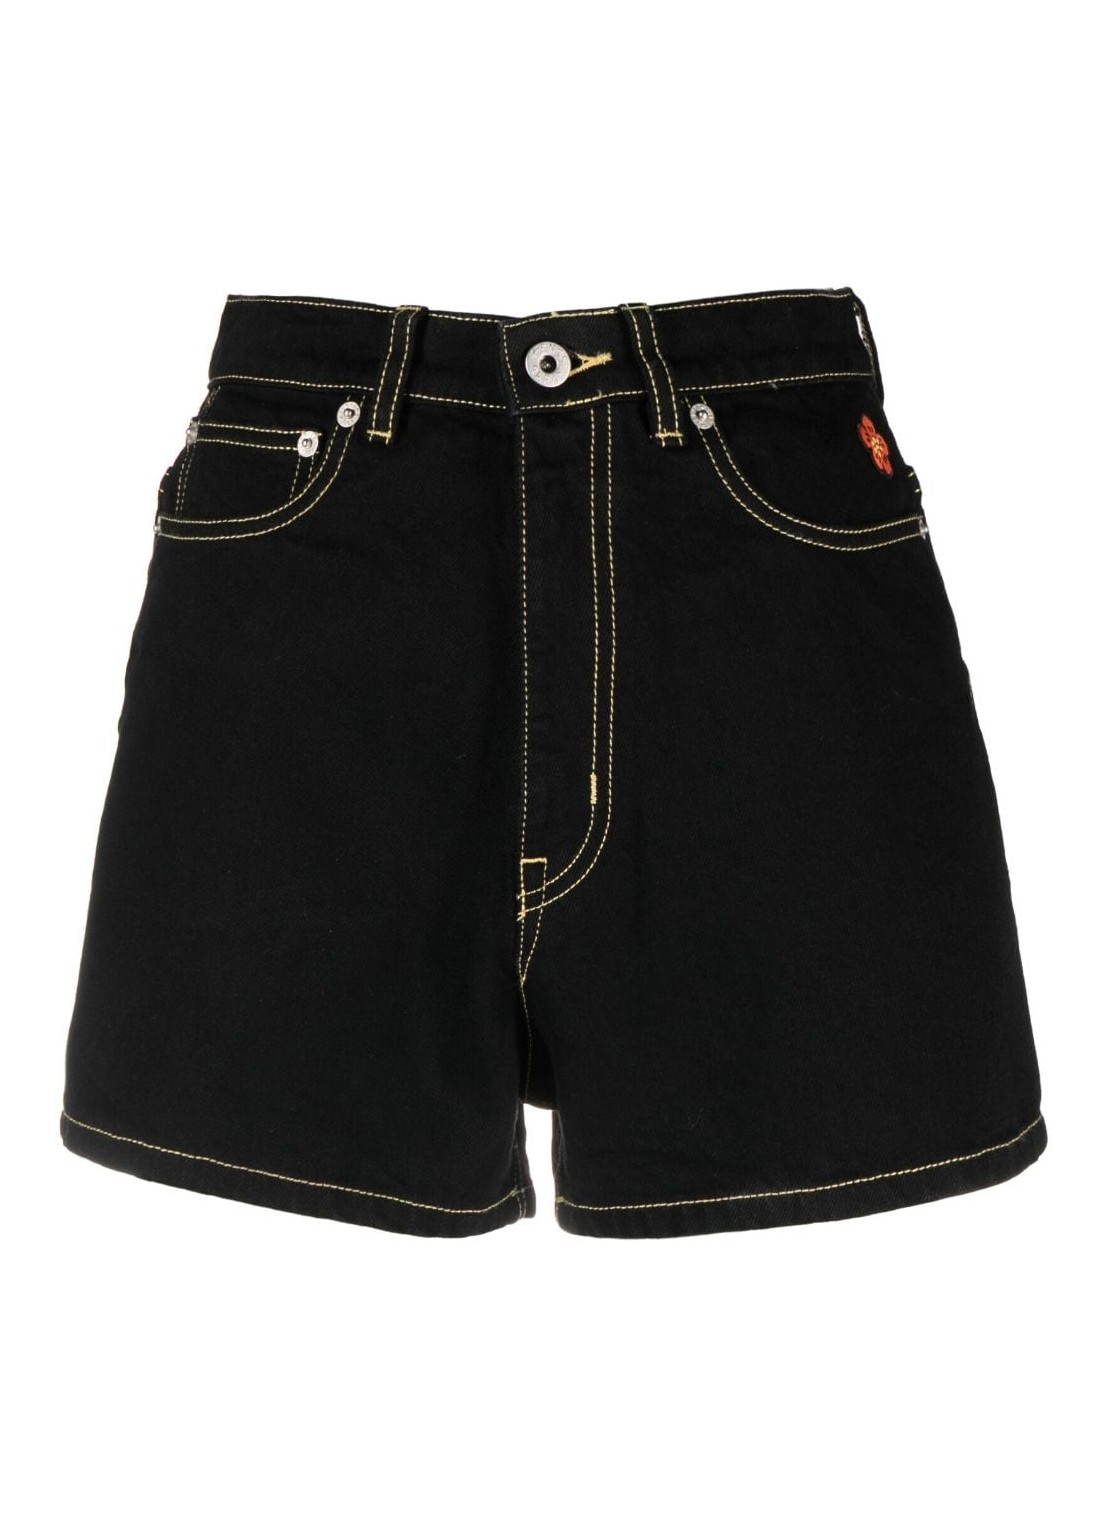 Pantalon corto kenzo short pant woman rinse black denim shorts fd62ds2006c1 bm talla negro
 